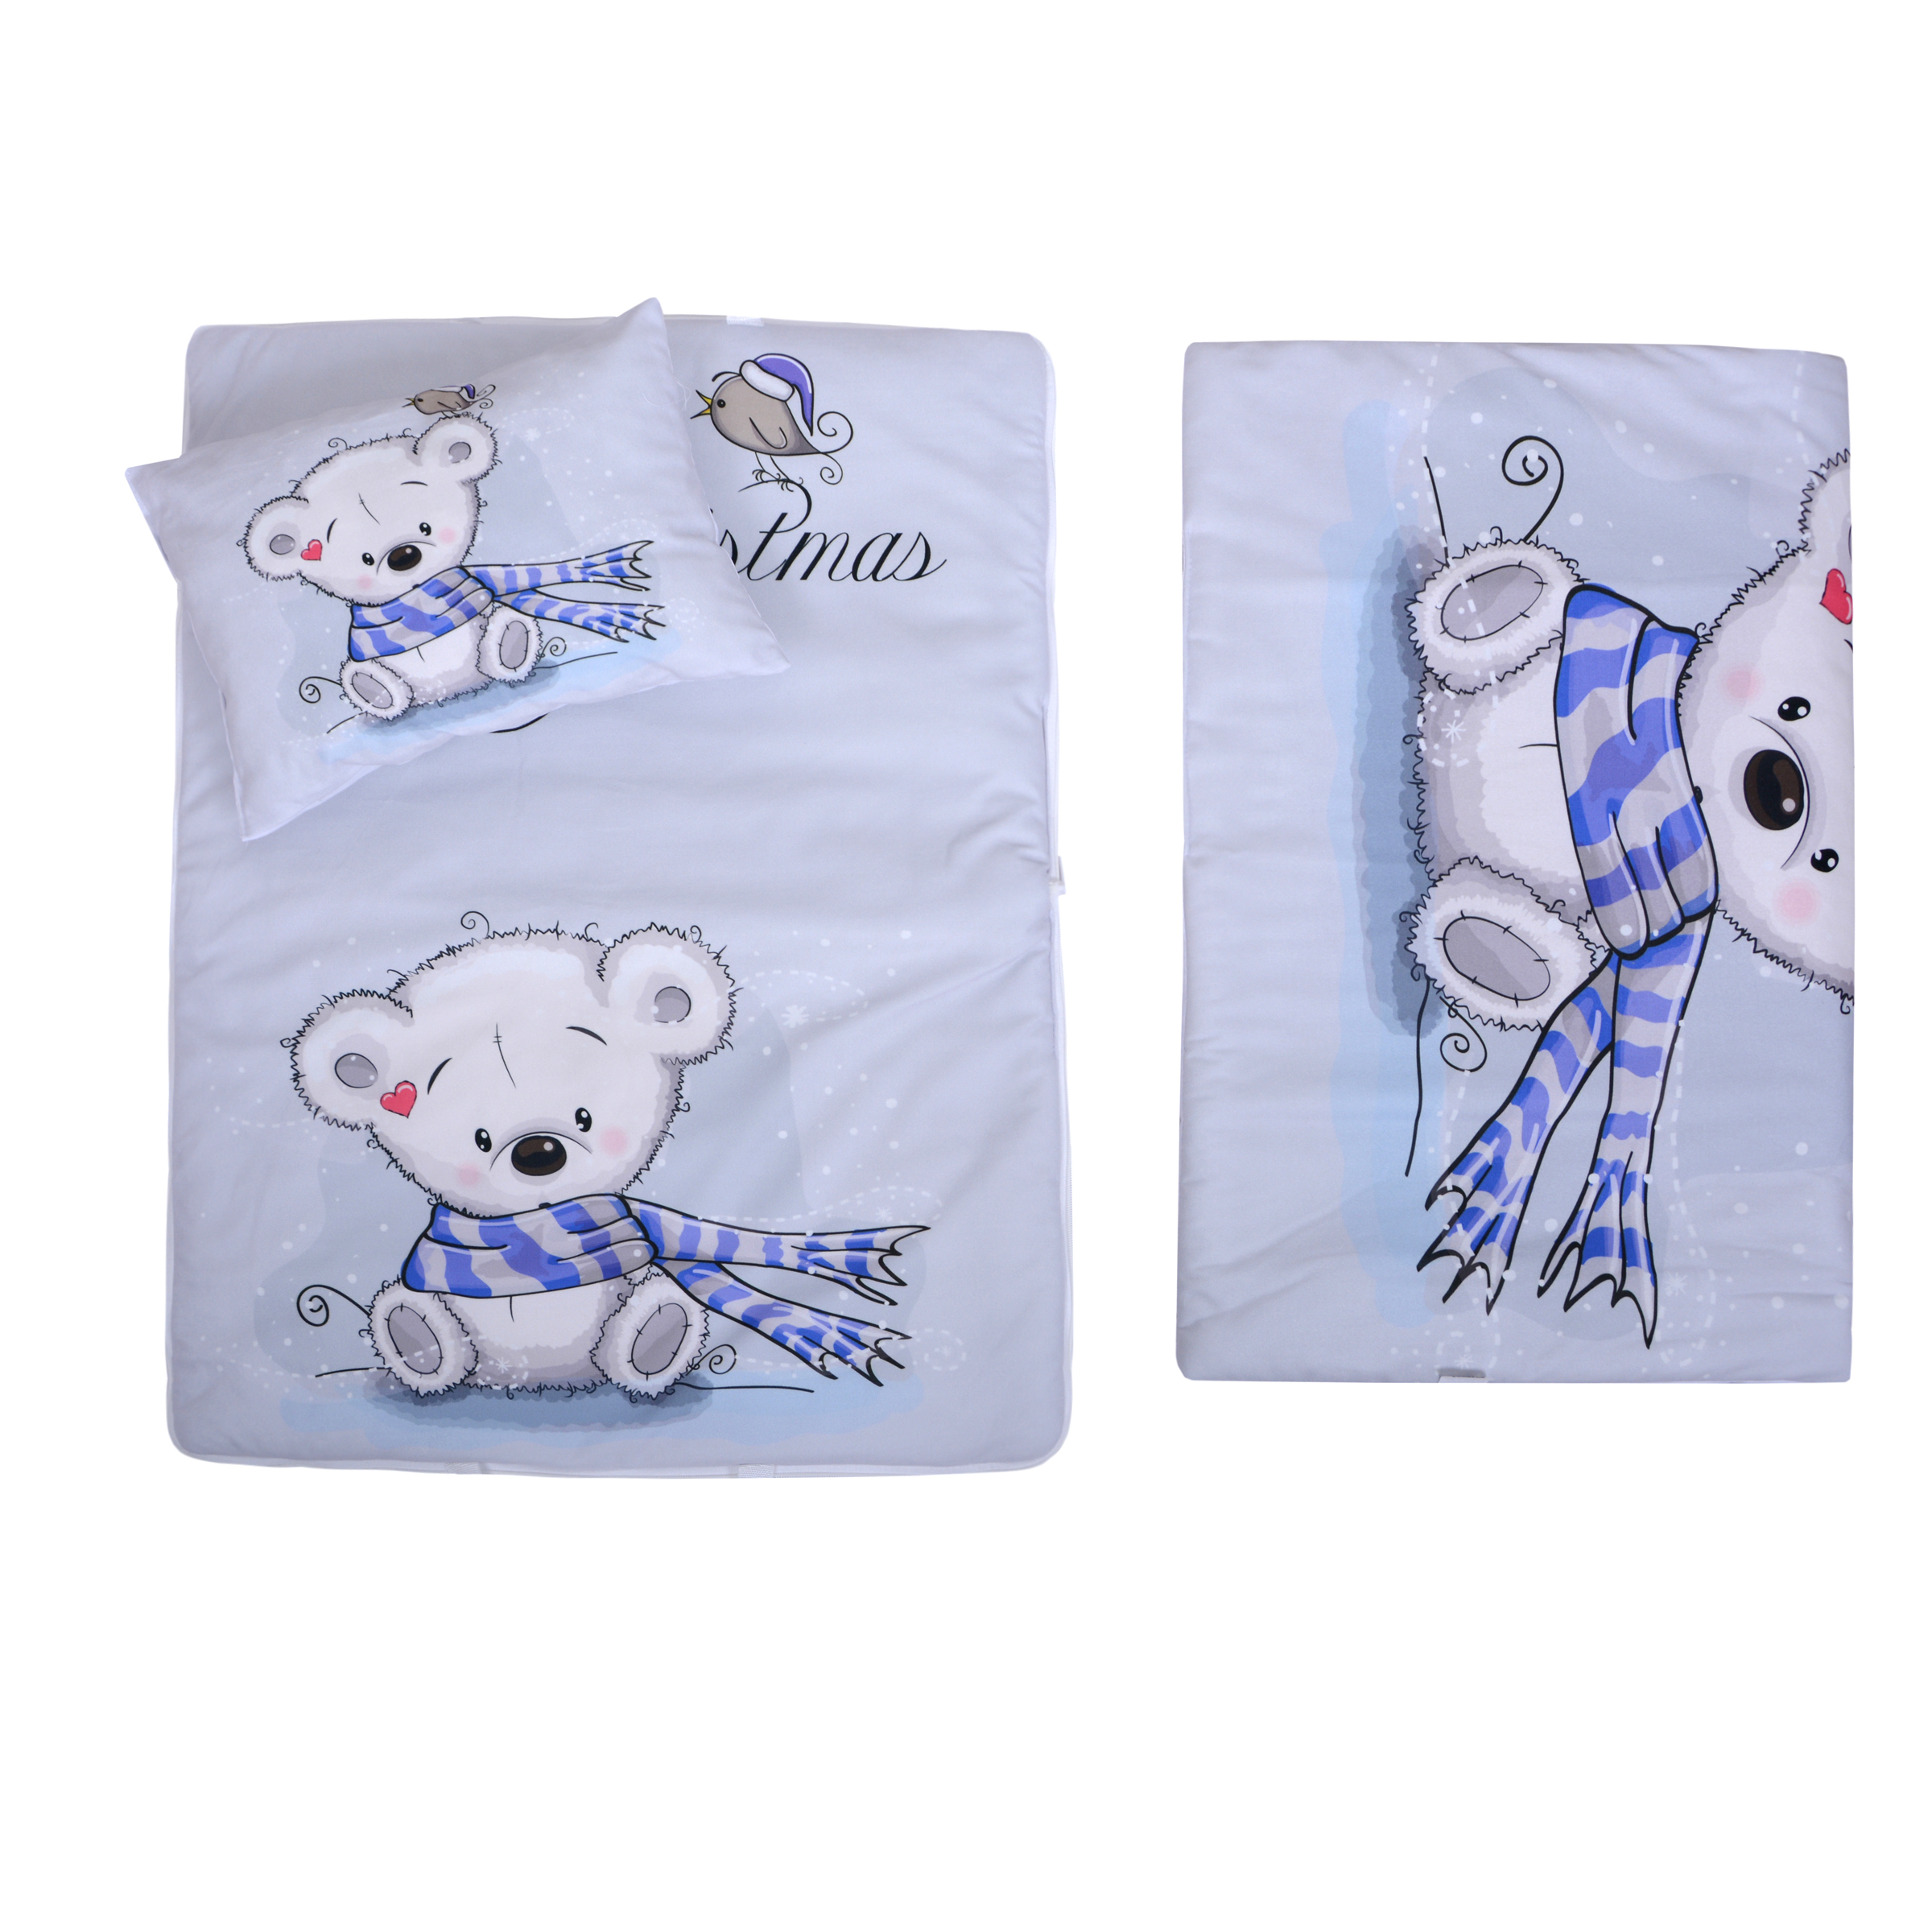 سرویس خواب کودک طرح خرس برفی مجموعه 3 عددی